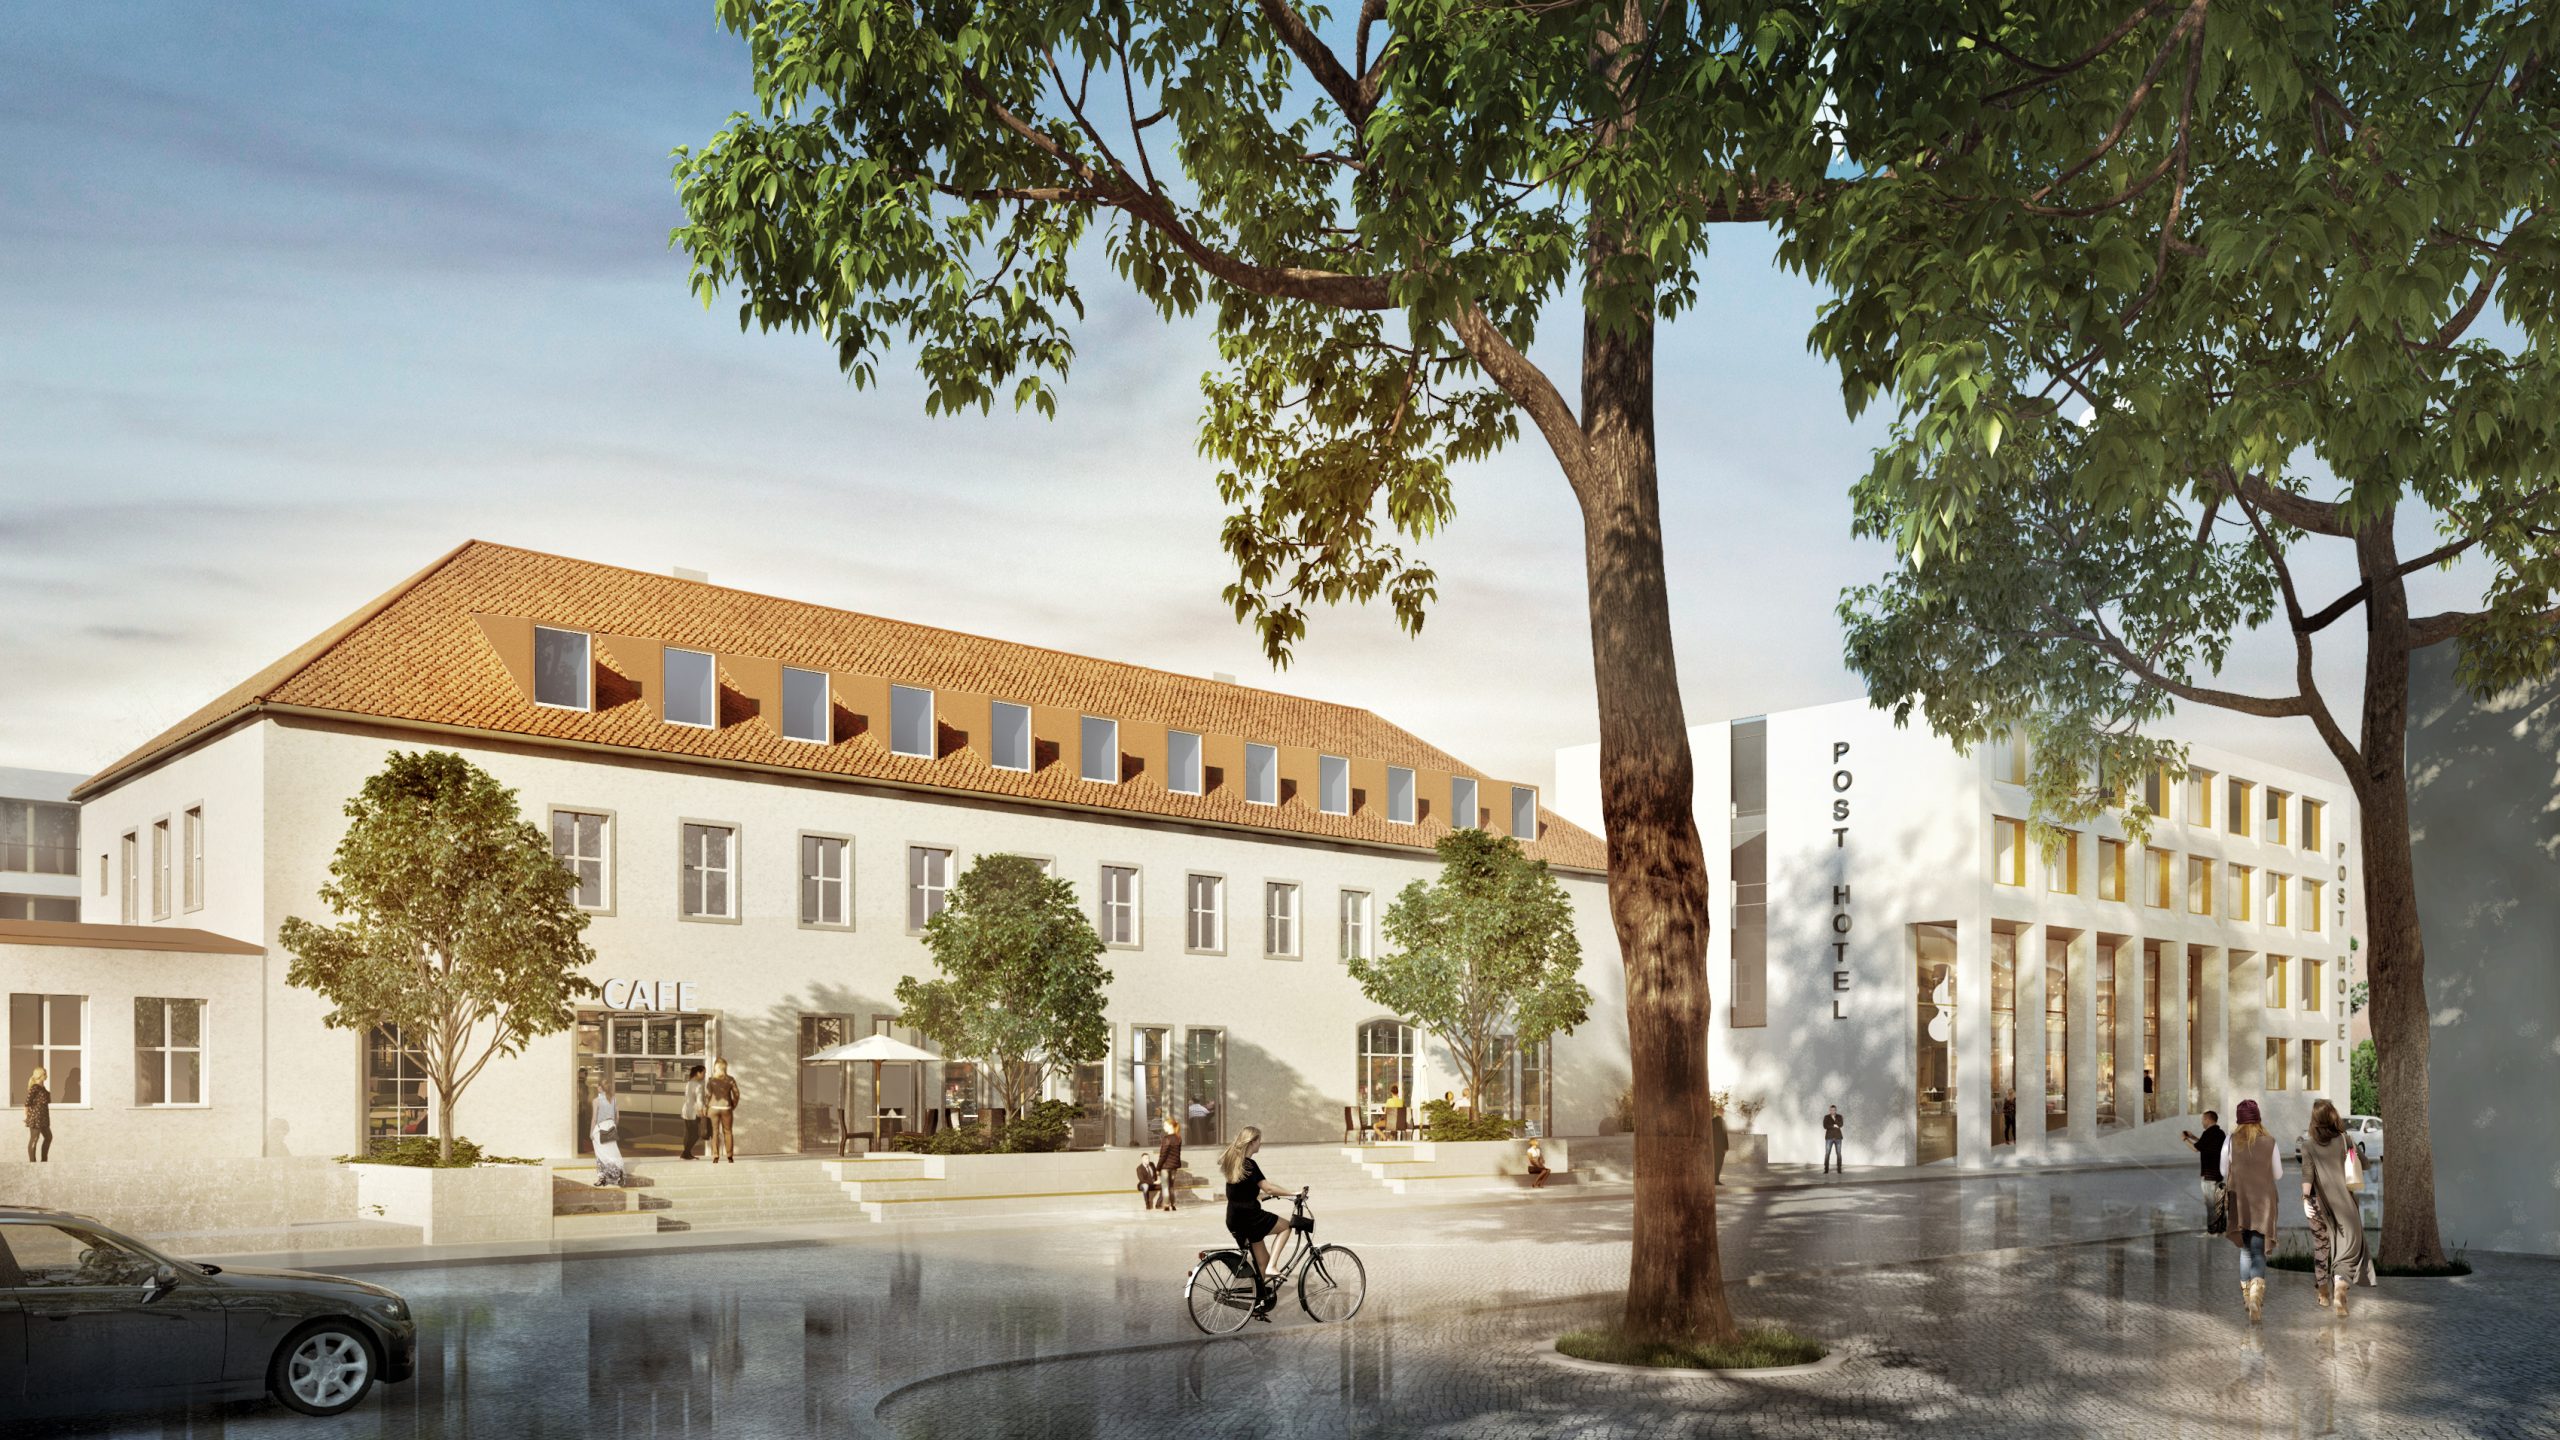 Blick auf das Postpalais, in dem eine BROTHAUS-Filiale er ffnen wird.
(Urheber: RKW Architektur+/ Quelle: Sontowski & Partner Group)